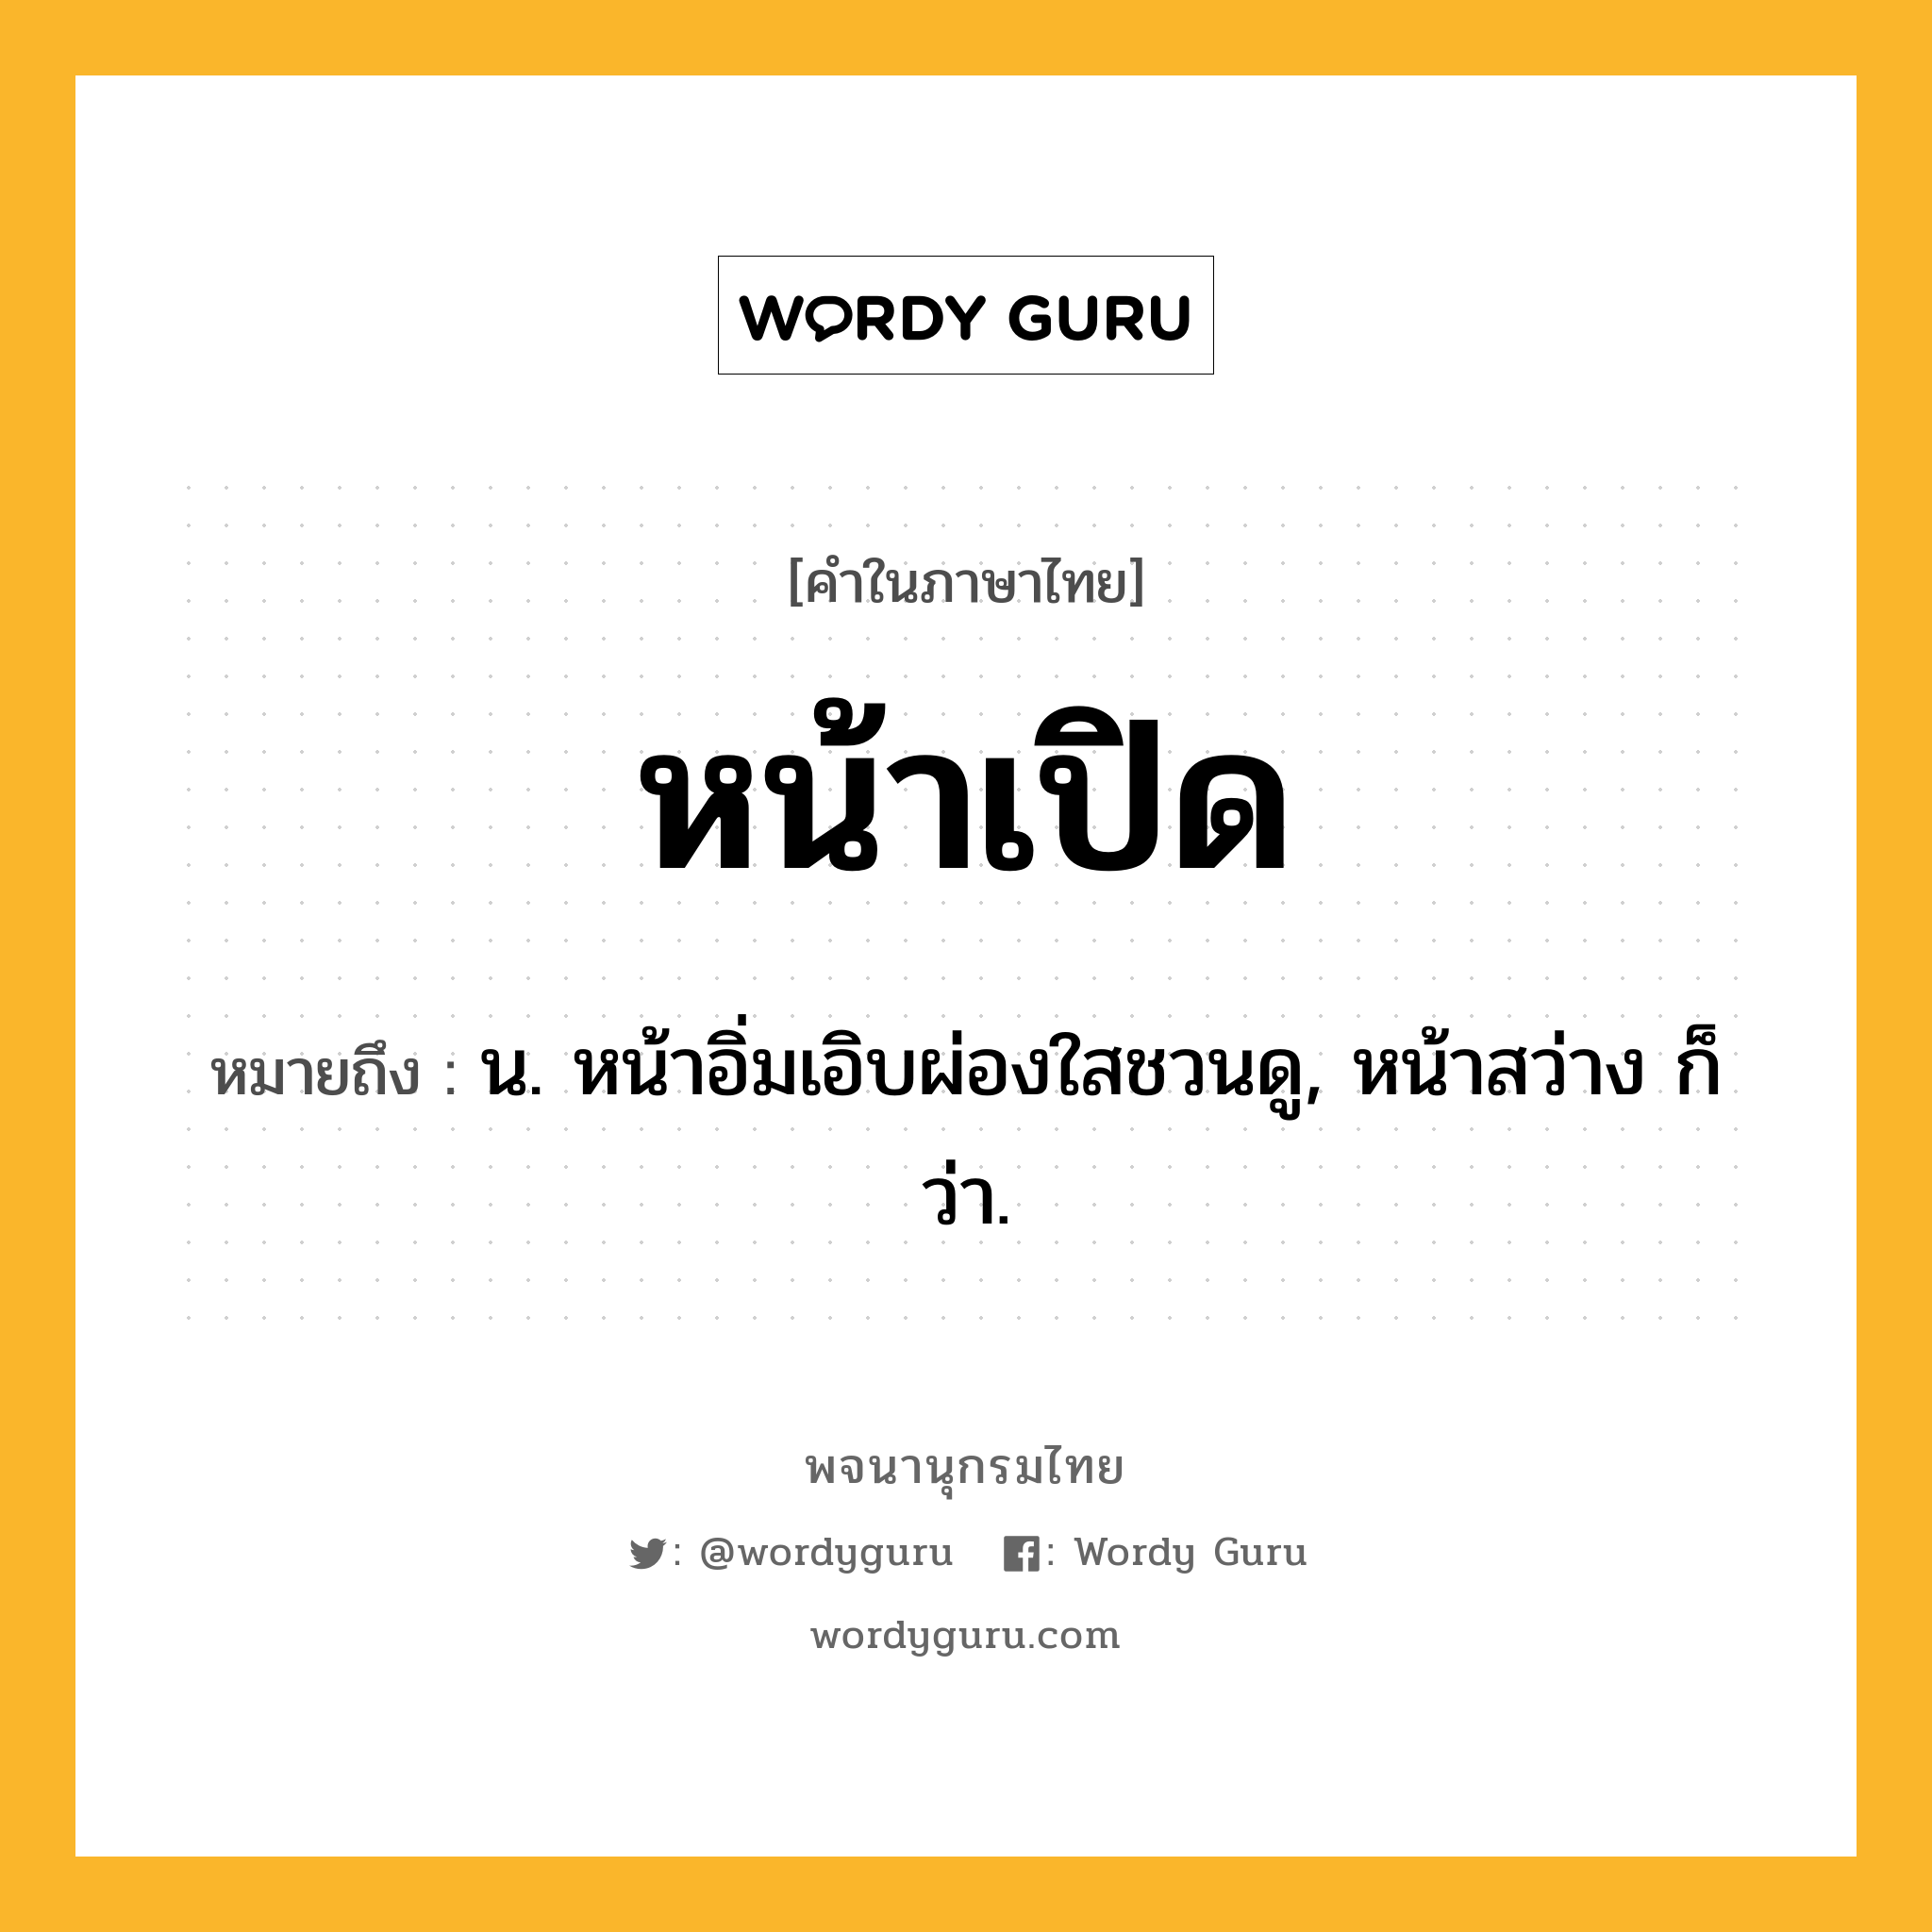 หน้าเปิด ความหมาย หมายถึงอะไร?, คำในภาษาไทย หน้าเปิด หมายถึง น. หน้าอิ่มเอิบผ่องใสชวนดู, หน้าสว่าง ก็ว่า.